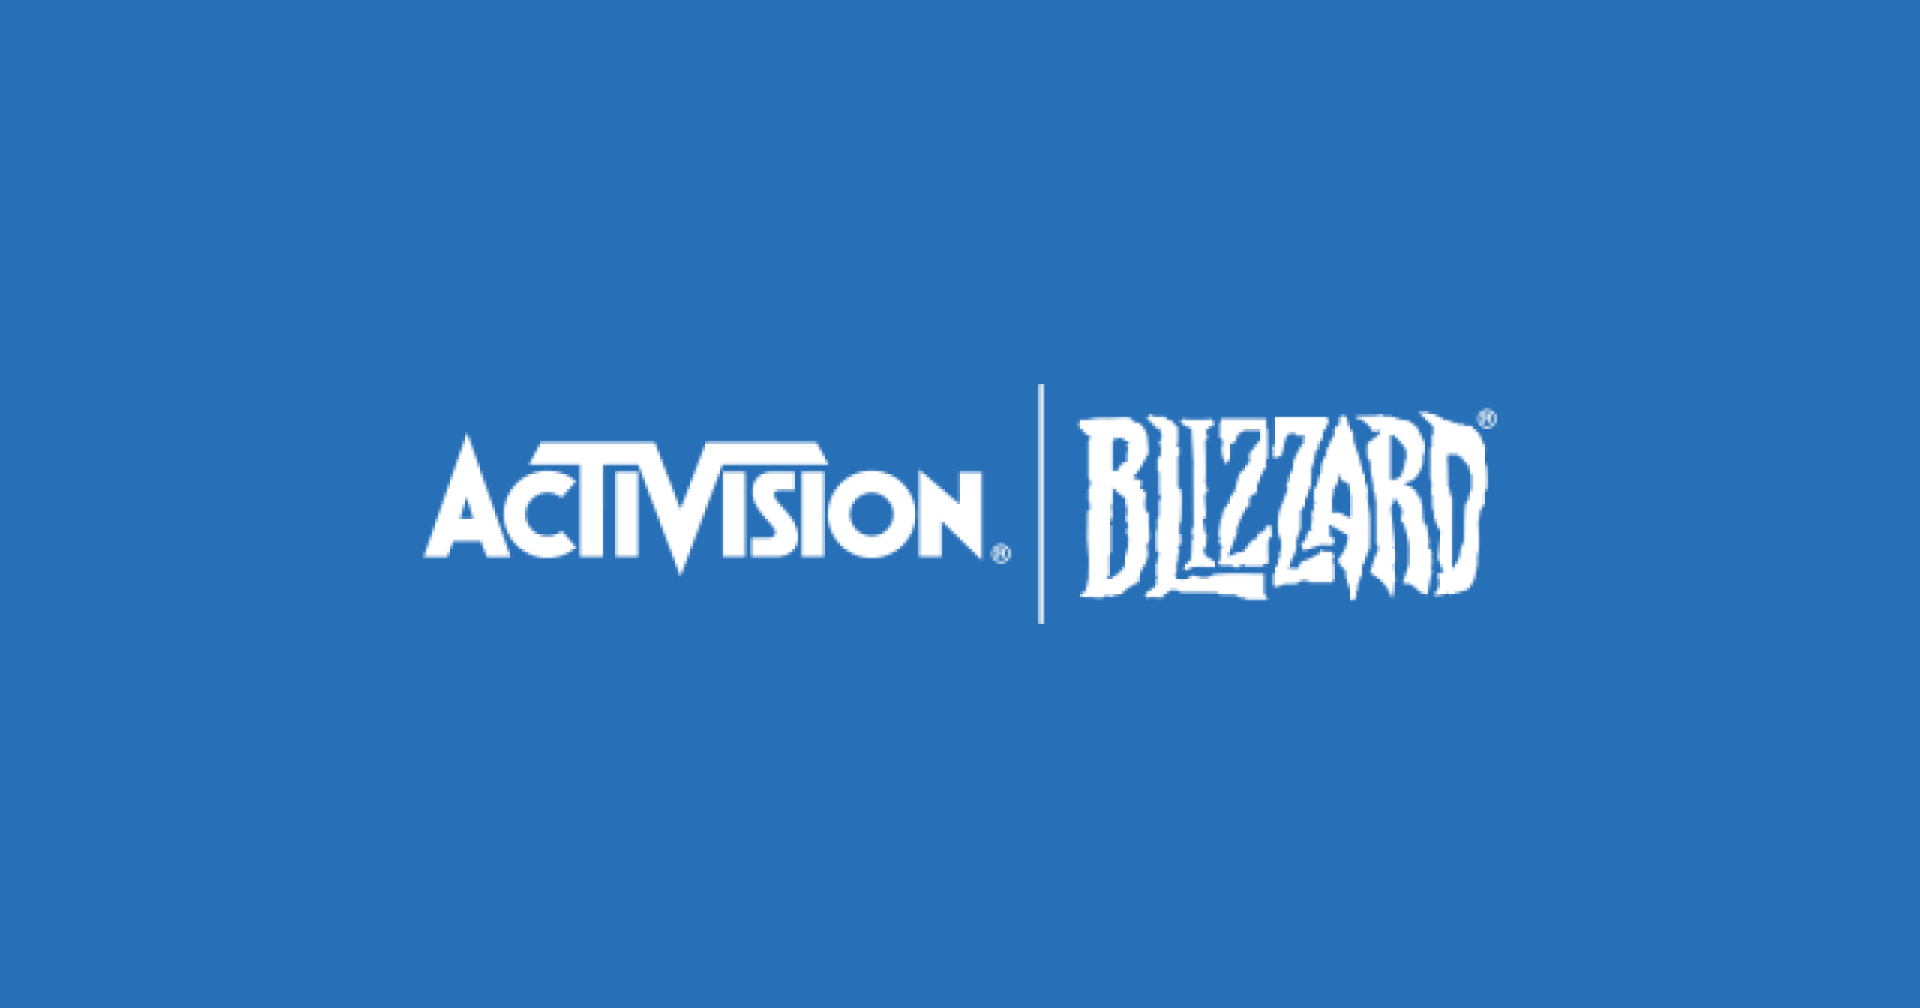 ซาอุดีอาระเบียเป็นชาติแรกที่อนุมัติดีลซื้อ Activision Blizzard ของ Microsoft